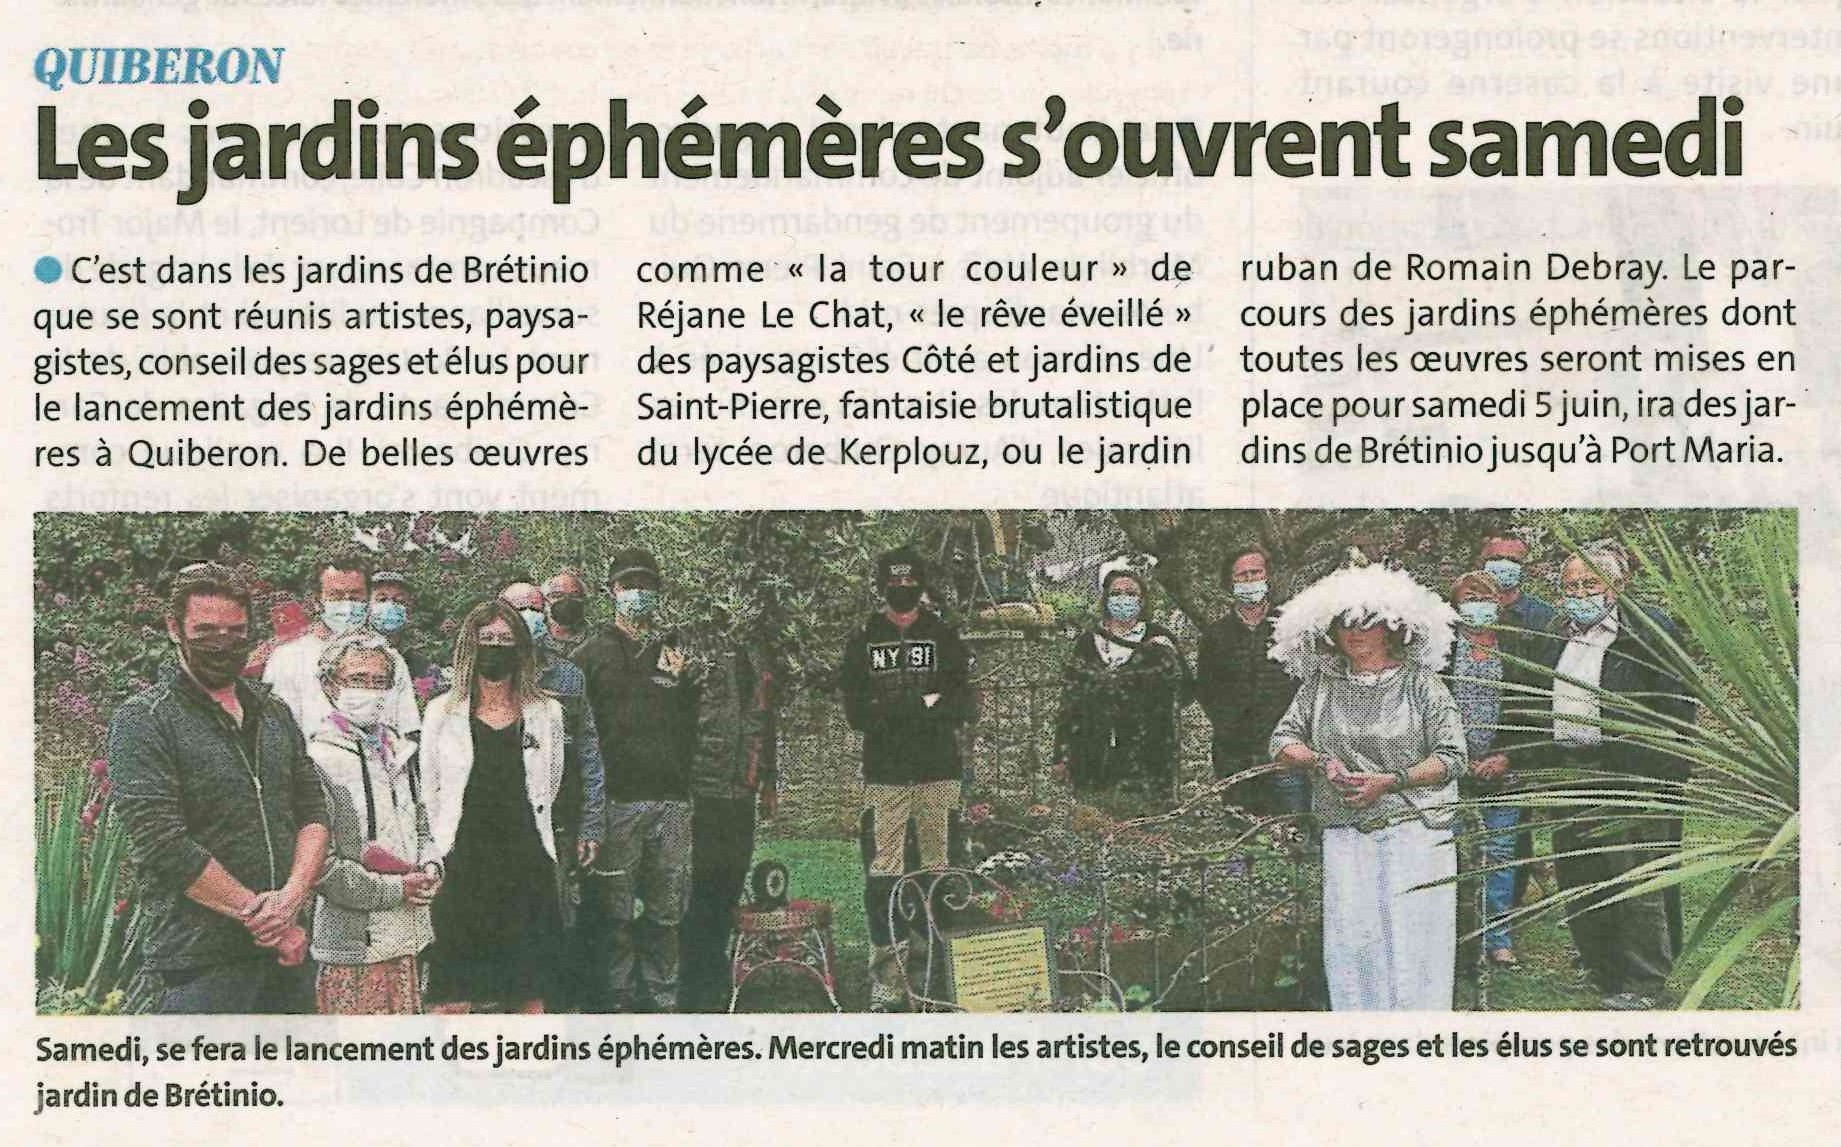 Quiberon : Les jardins éphémères s’ouvrent samedi (1 article Ouest-France + 1 article Le Télégramme)